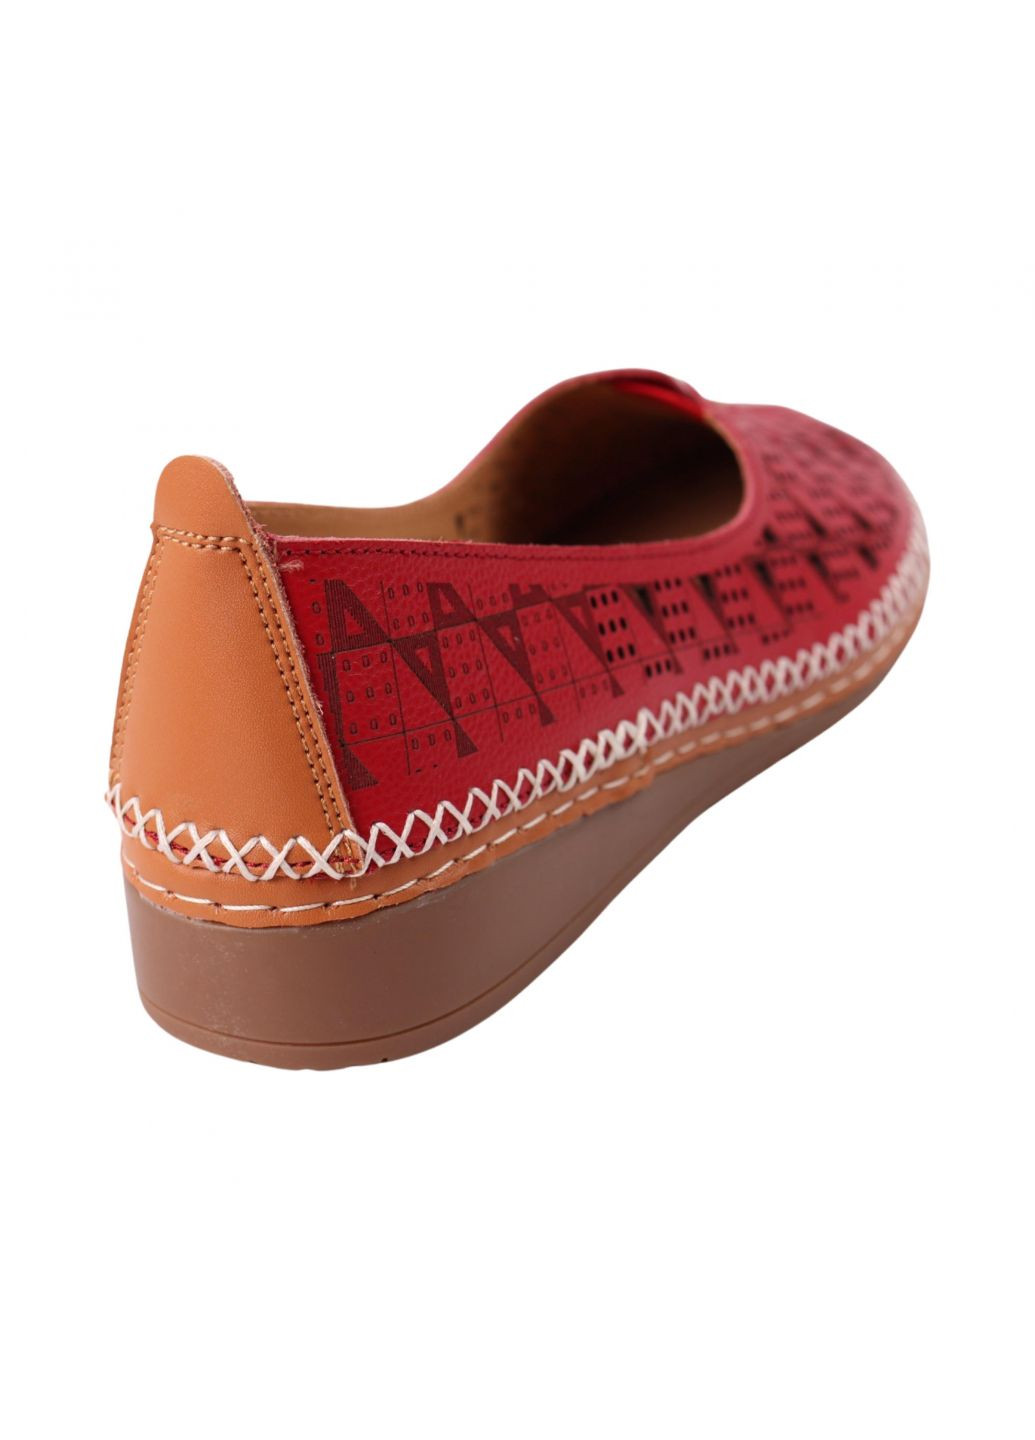 Туфли женские красные натуральная кожа Lifexpert